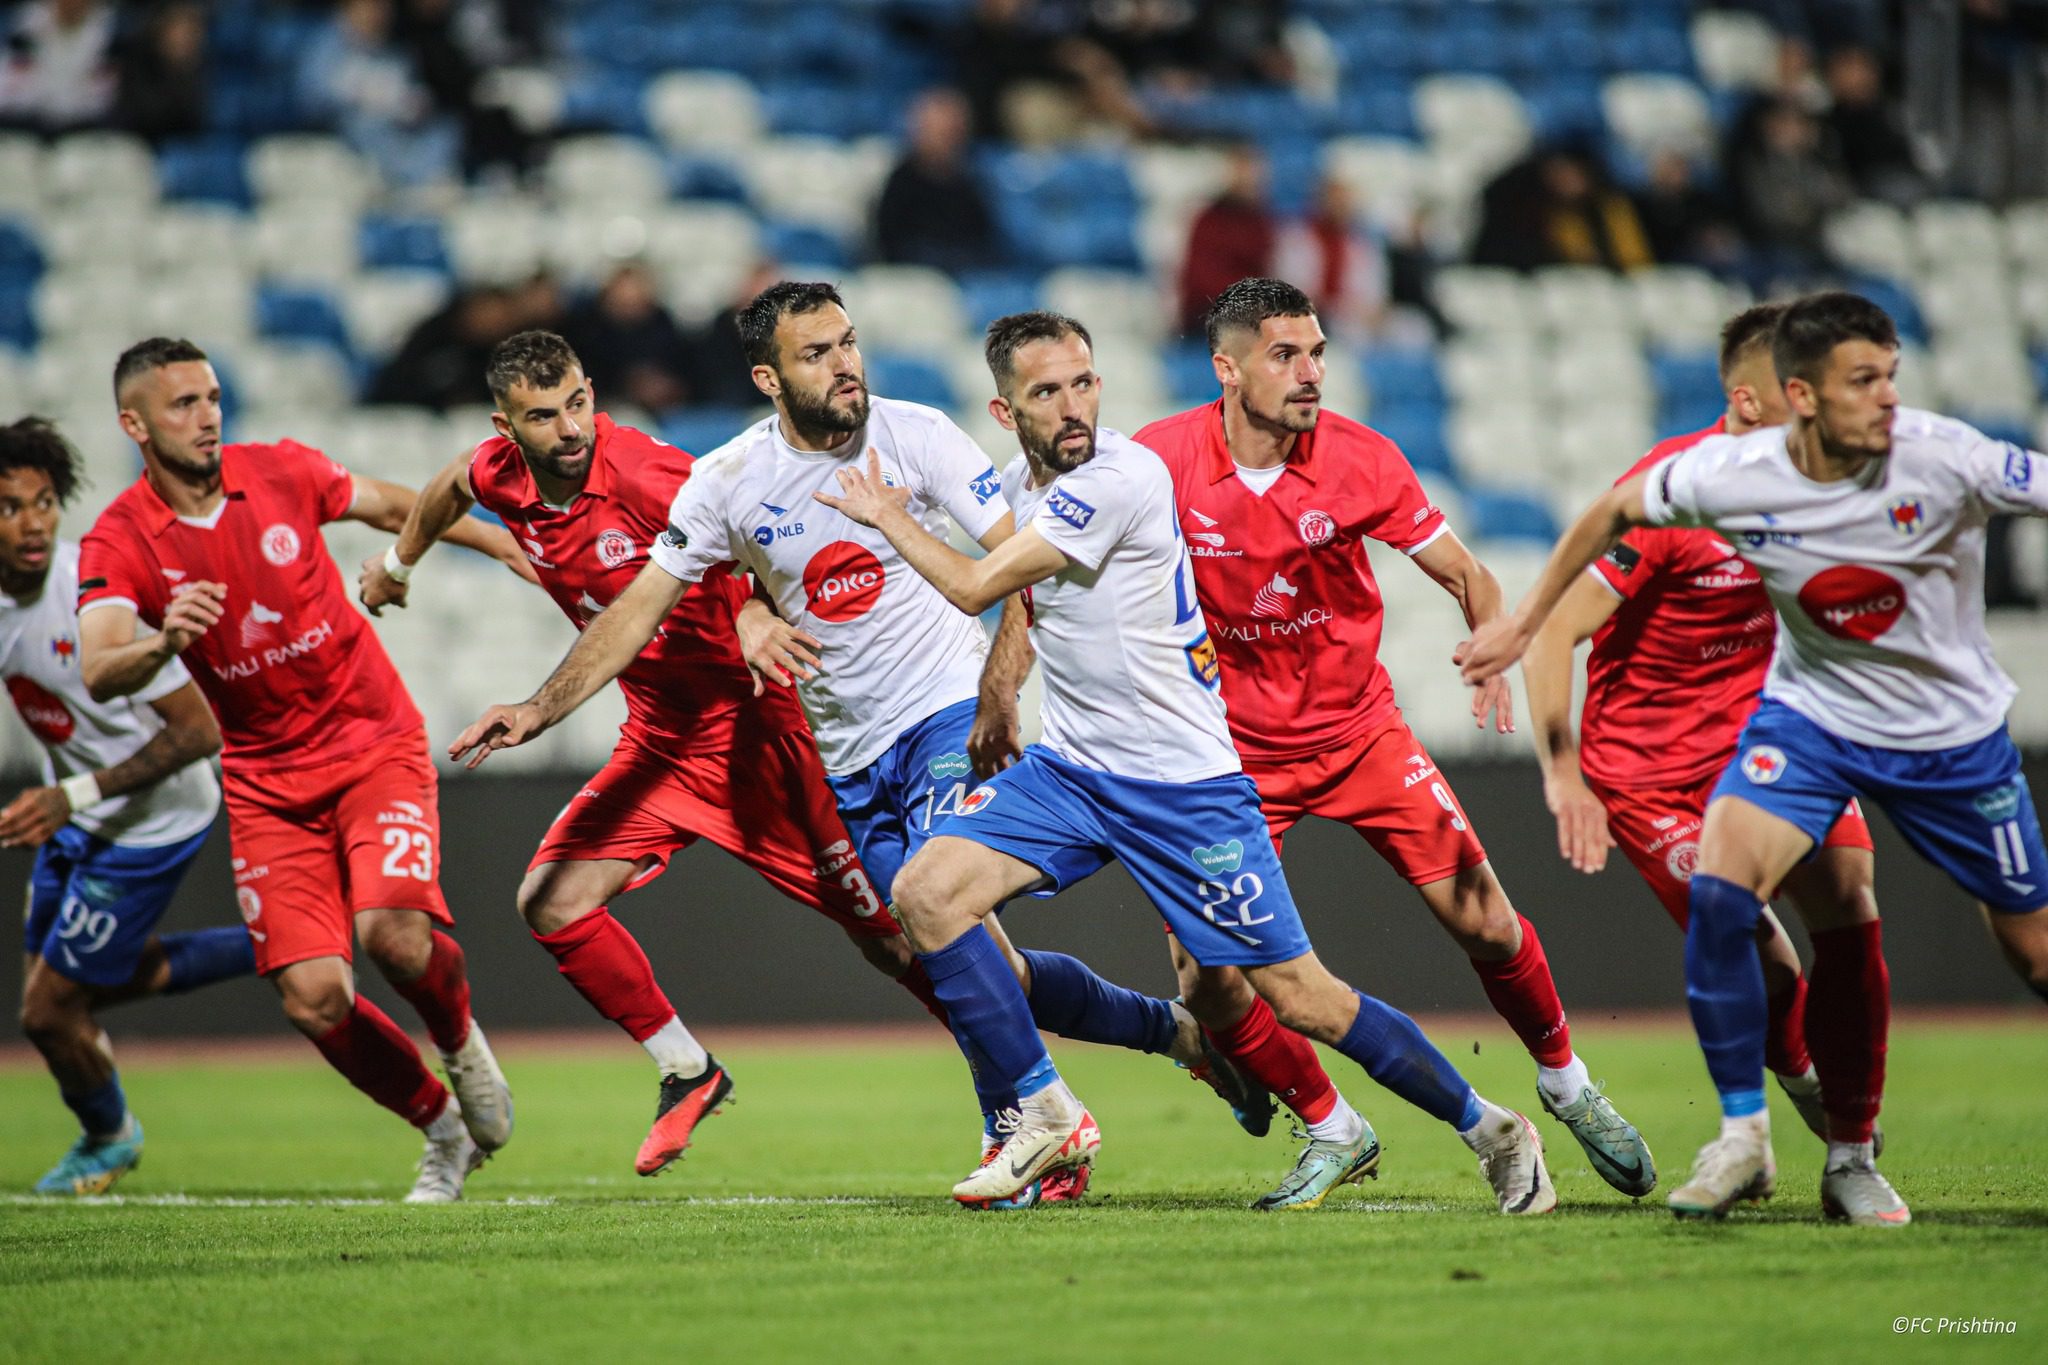 Tërhiqet shorti për 1/8 e finales në Kupën e Kosovës, Gjilani e pret Prishtinën, për t’a përsëritur finalen e vitit të kaluar